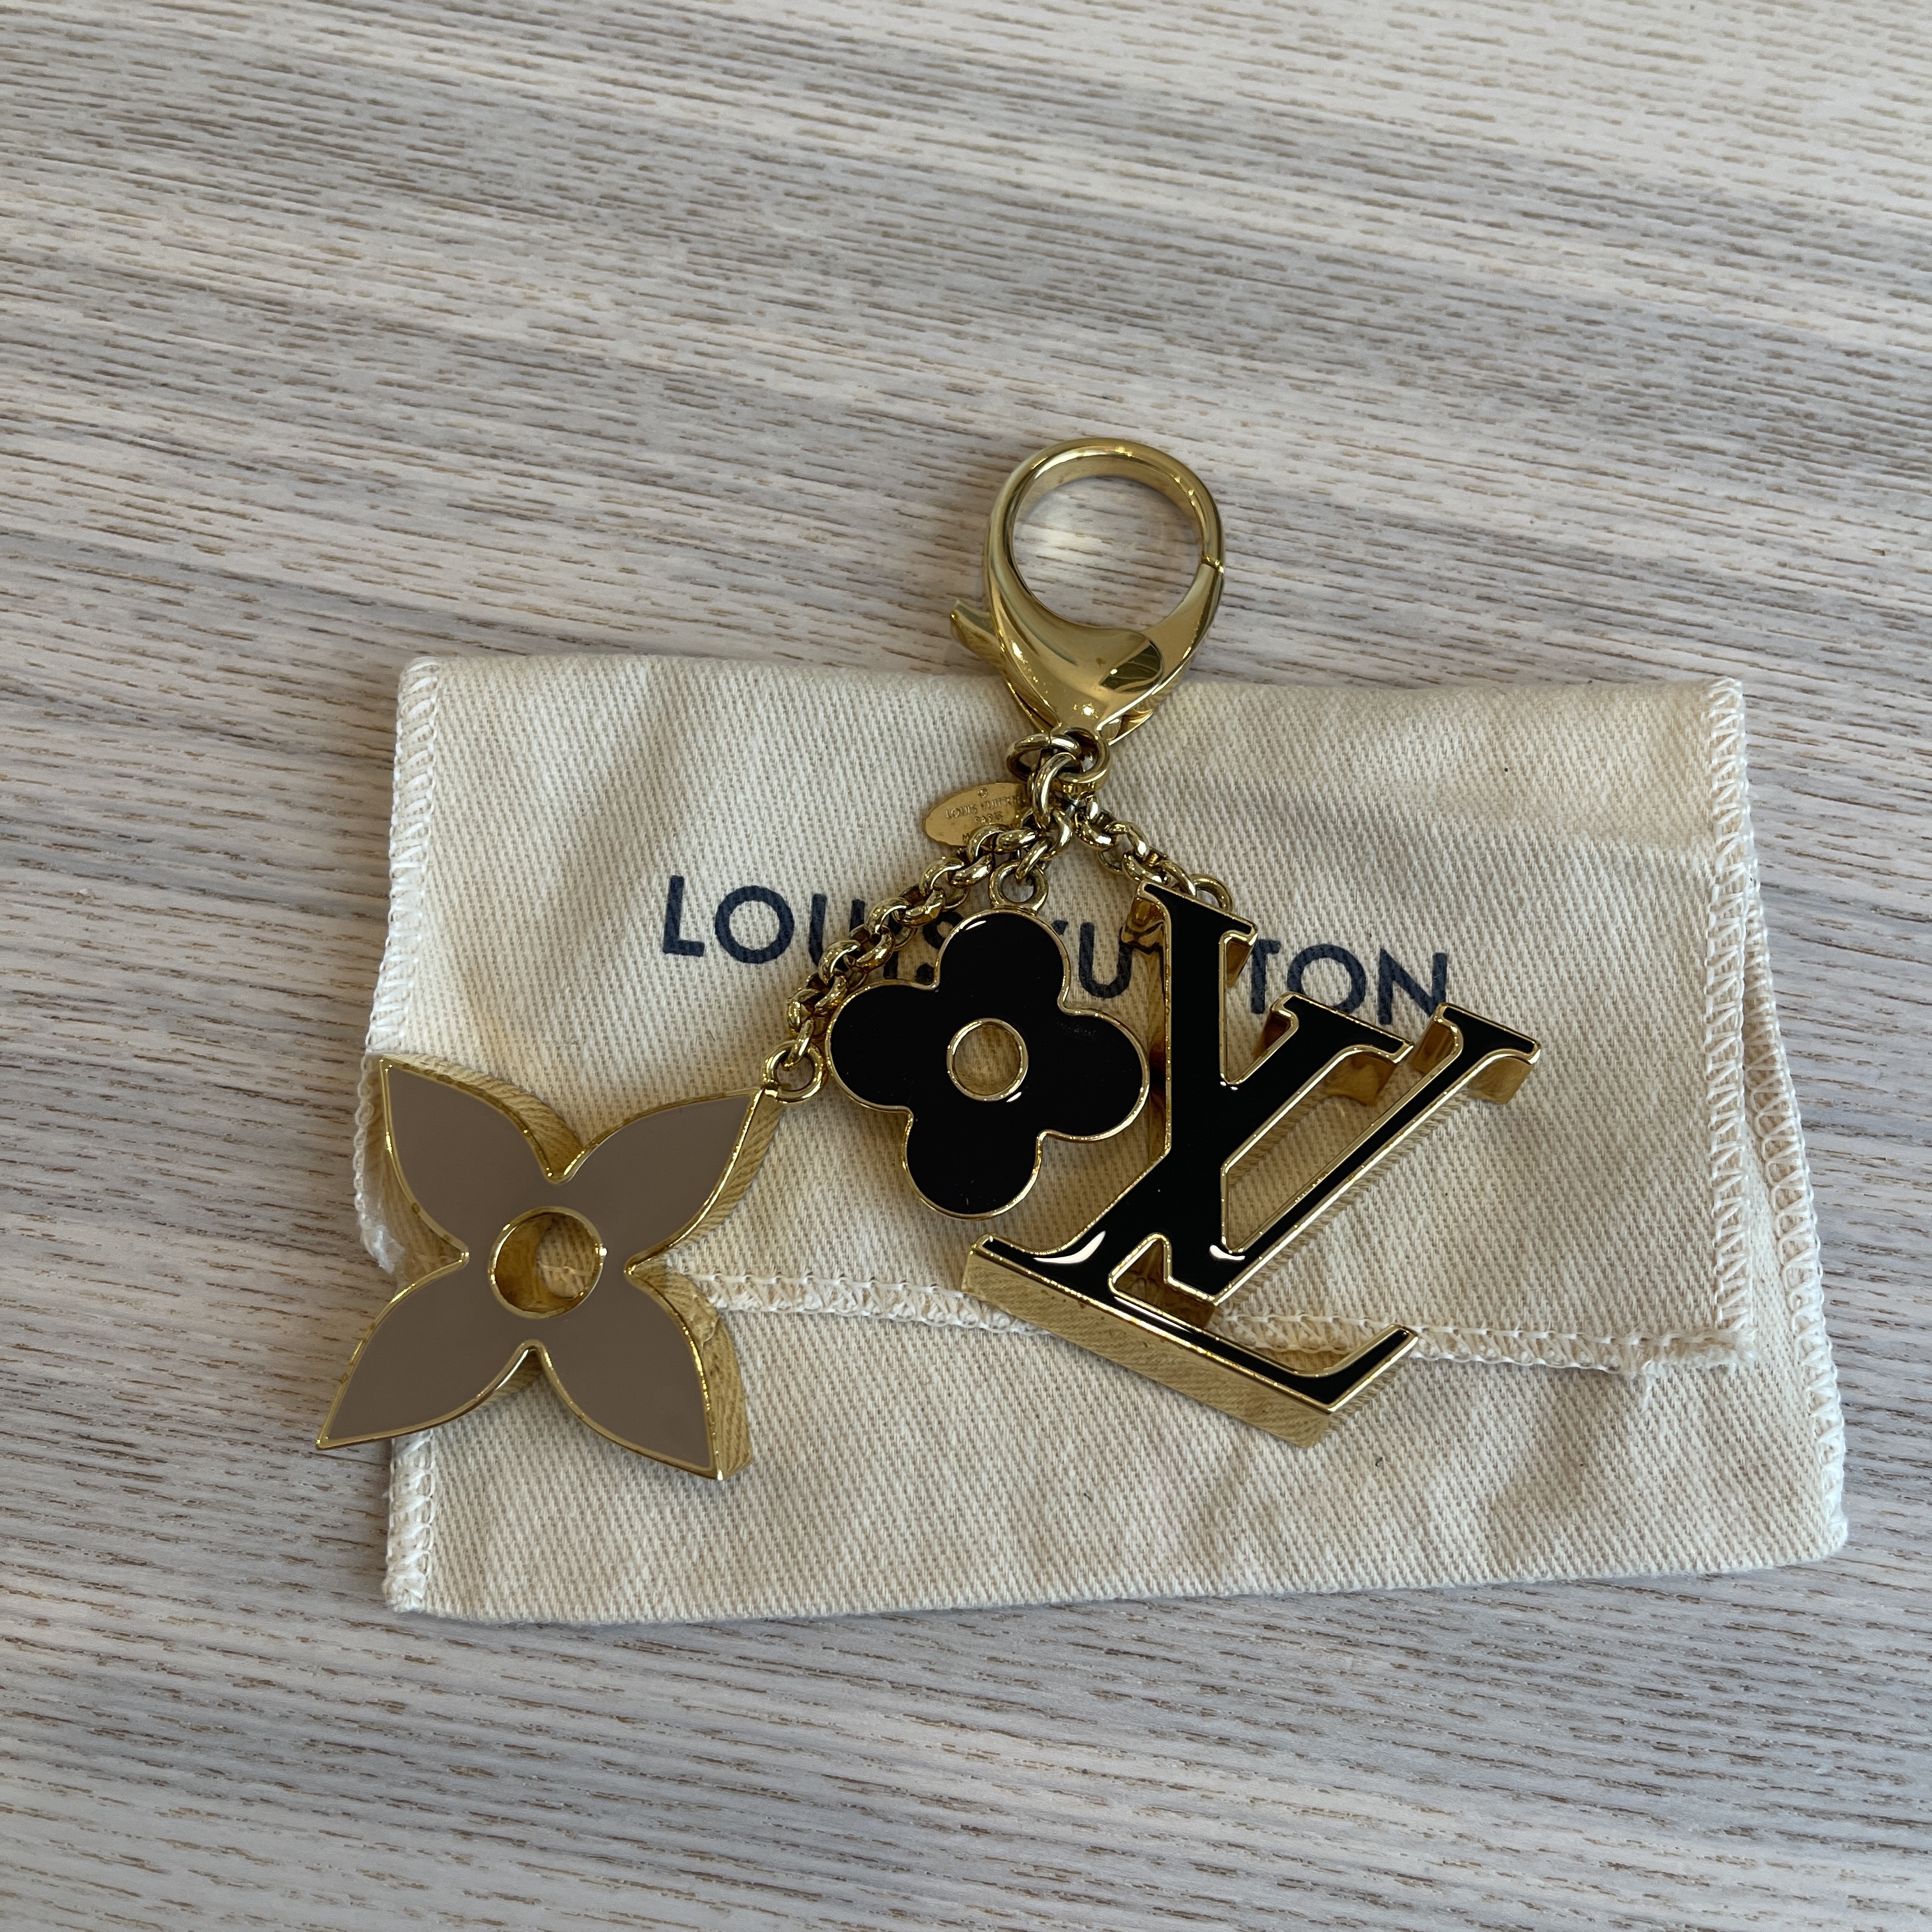 Louis Vuitton Fleur de Monogram Bag Charm - SOLD